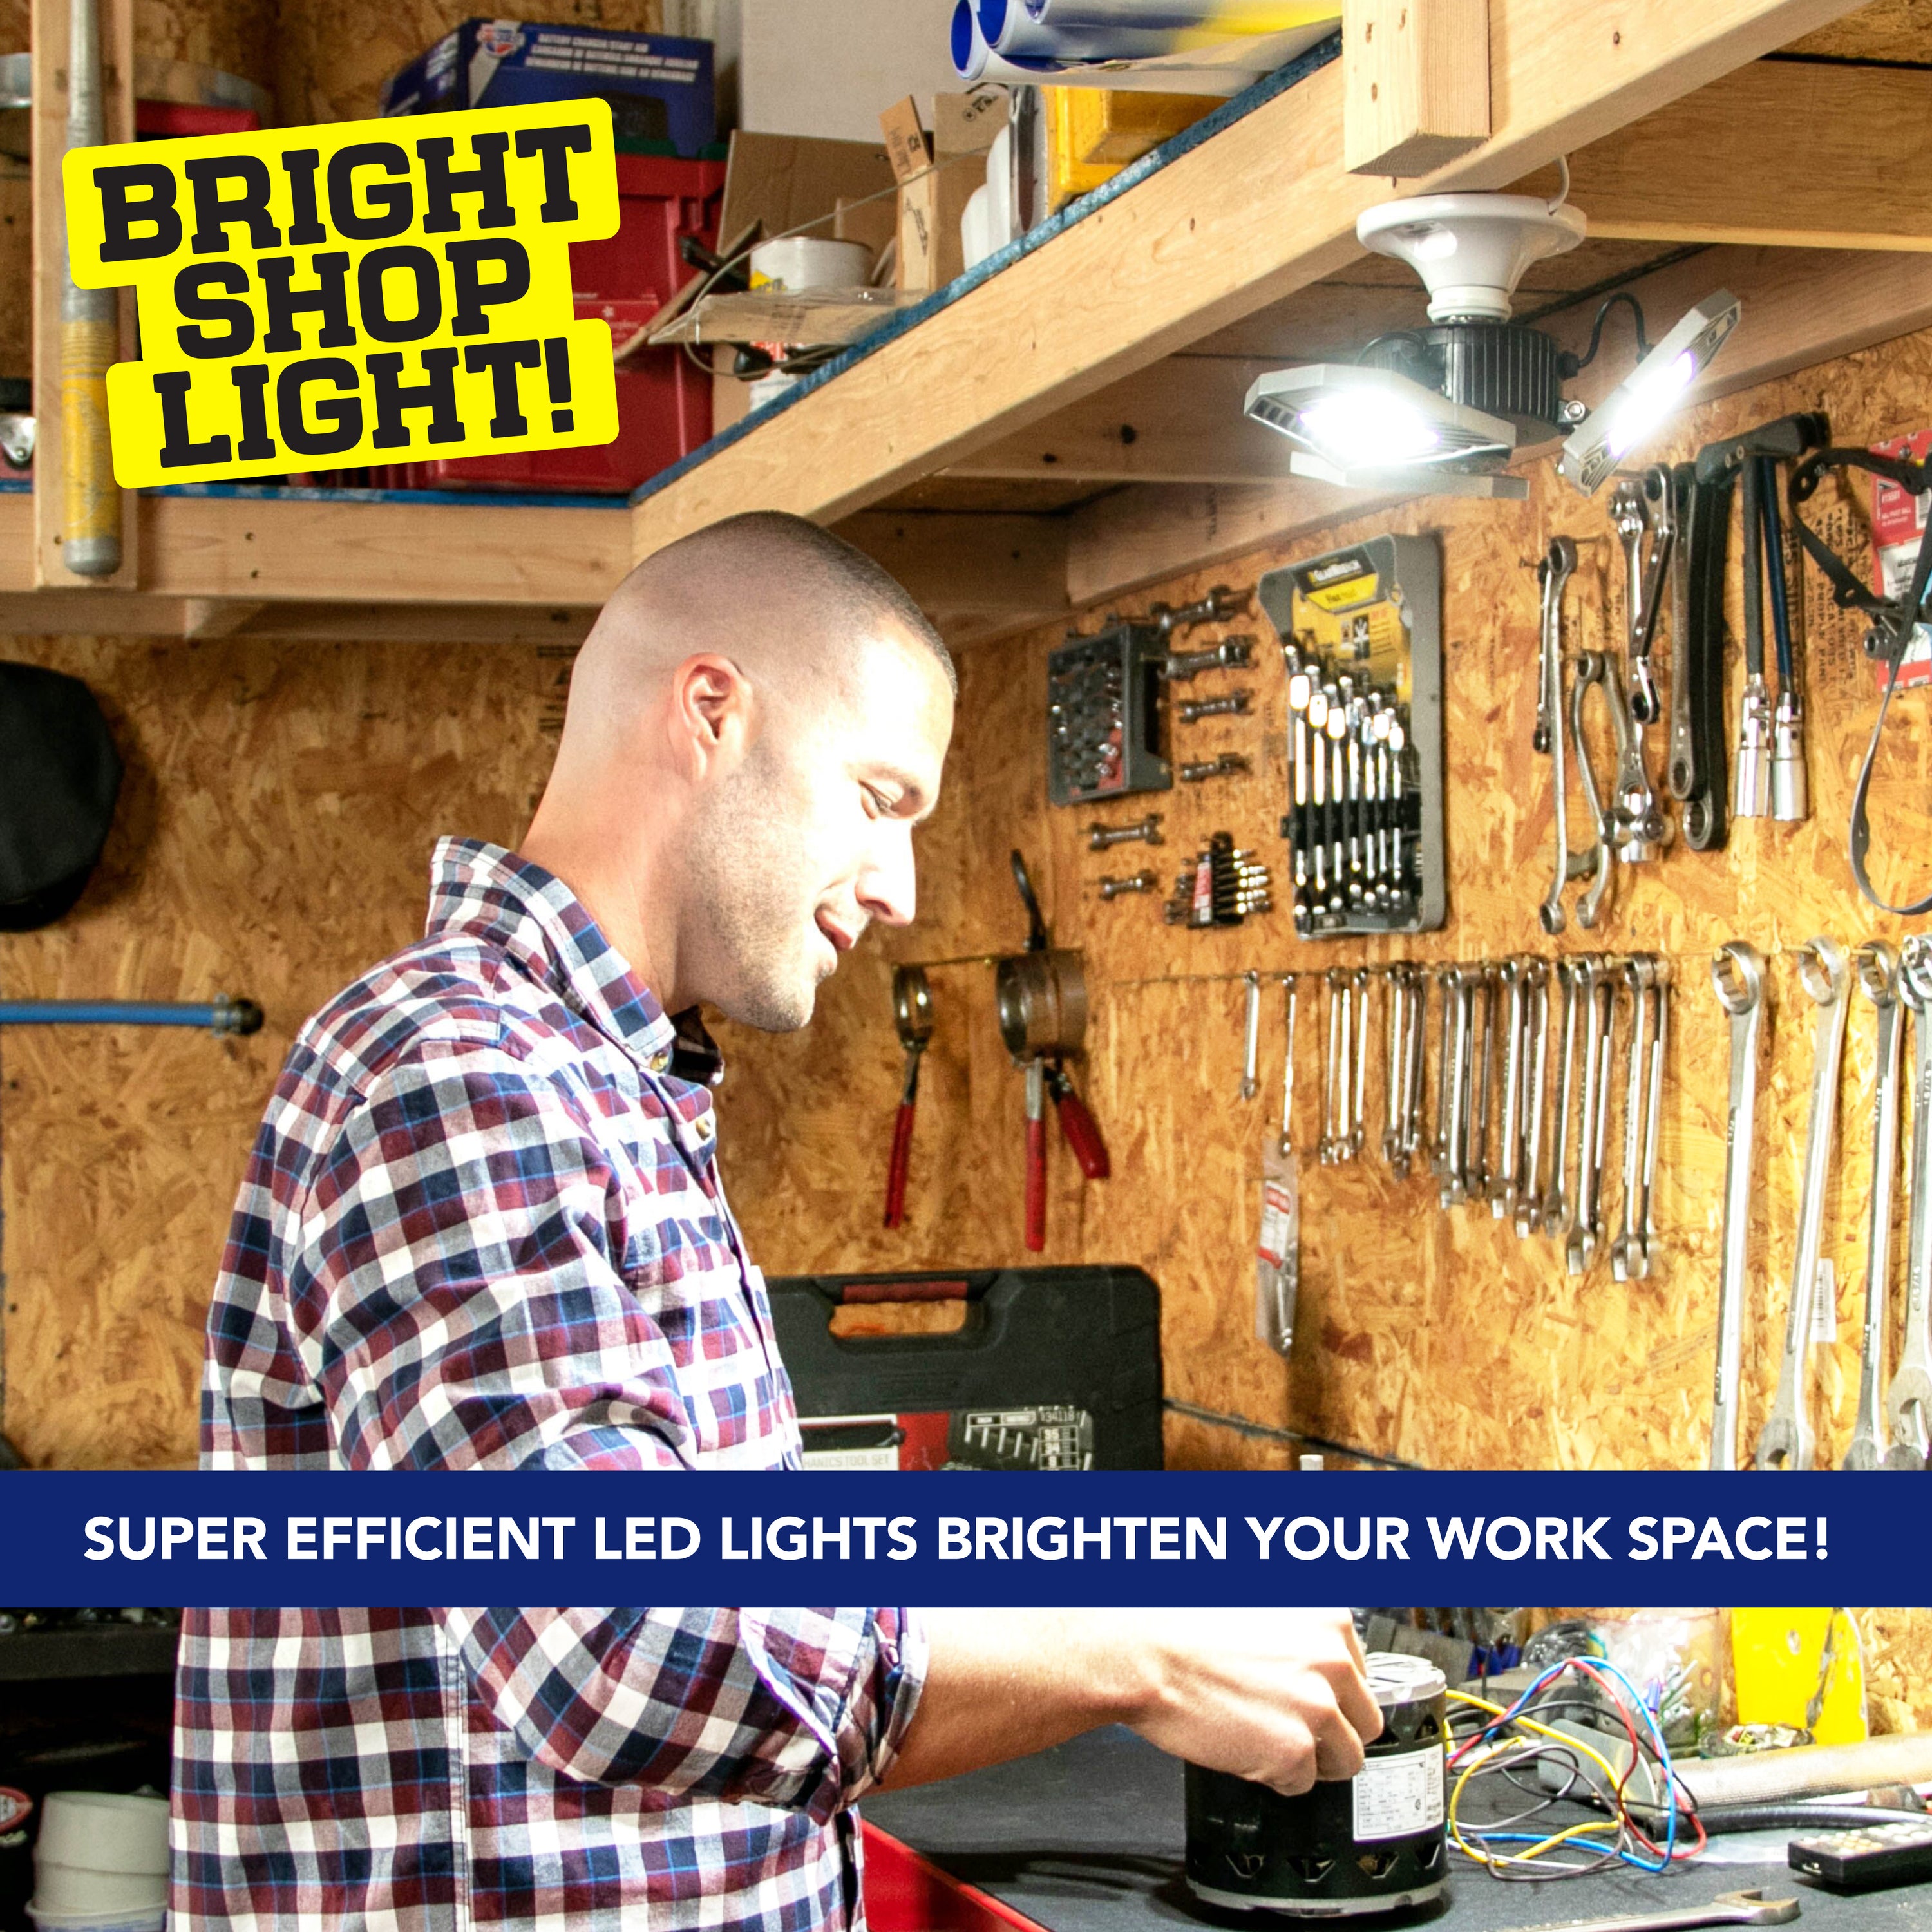 Bell + Howell Triburst Deluxe LED Panel 5500 Lumen White Adjustable High Intensity Flush Mount Screw In Ceiling Garage Light